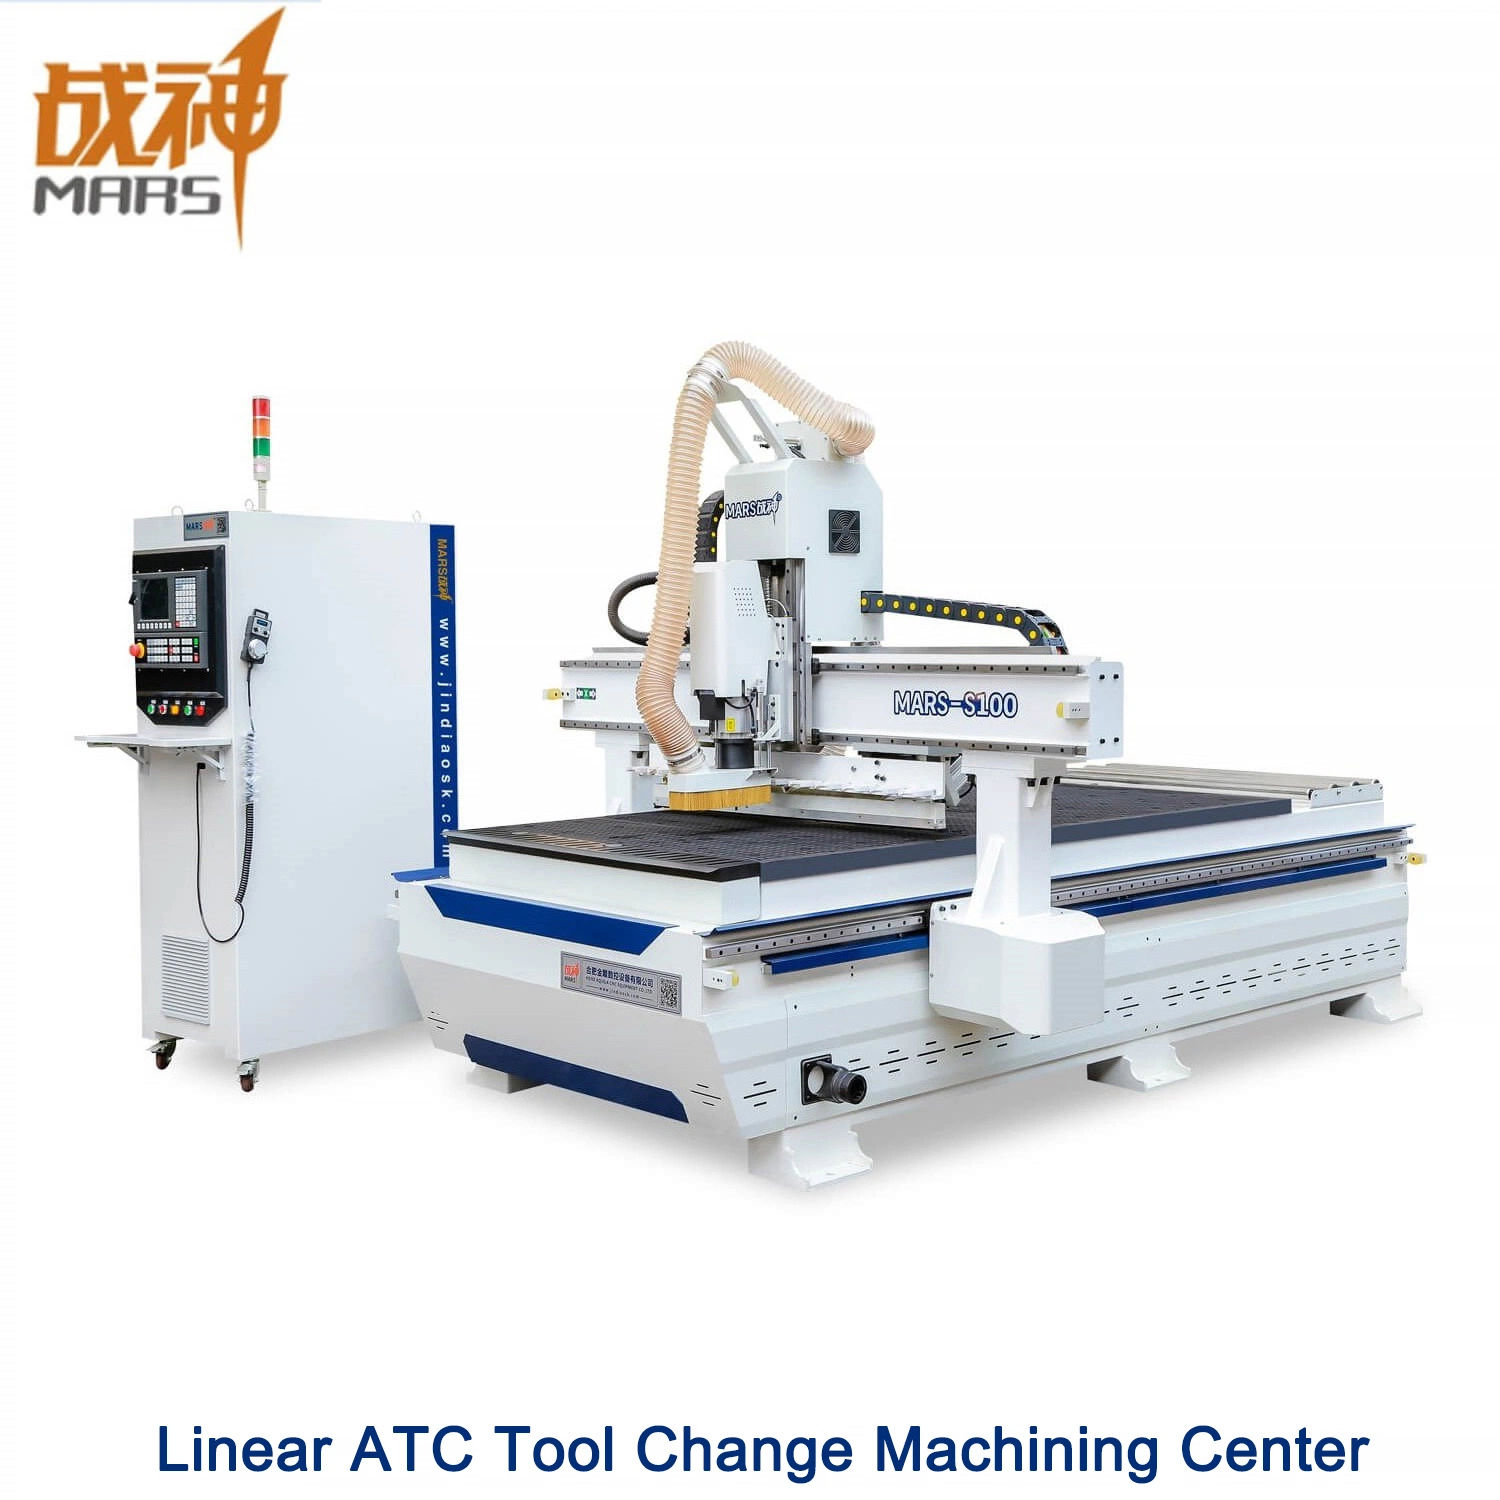 Herramientas de lineal cambiar de equipo CNC centro de mecanizado de corte muebles Panel S100